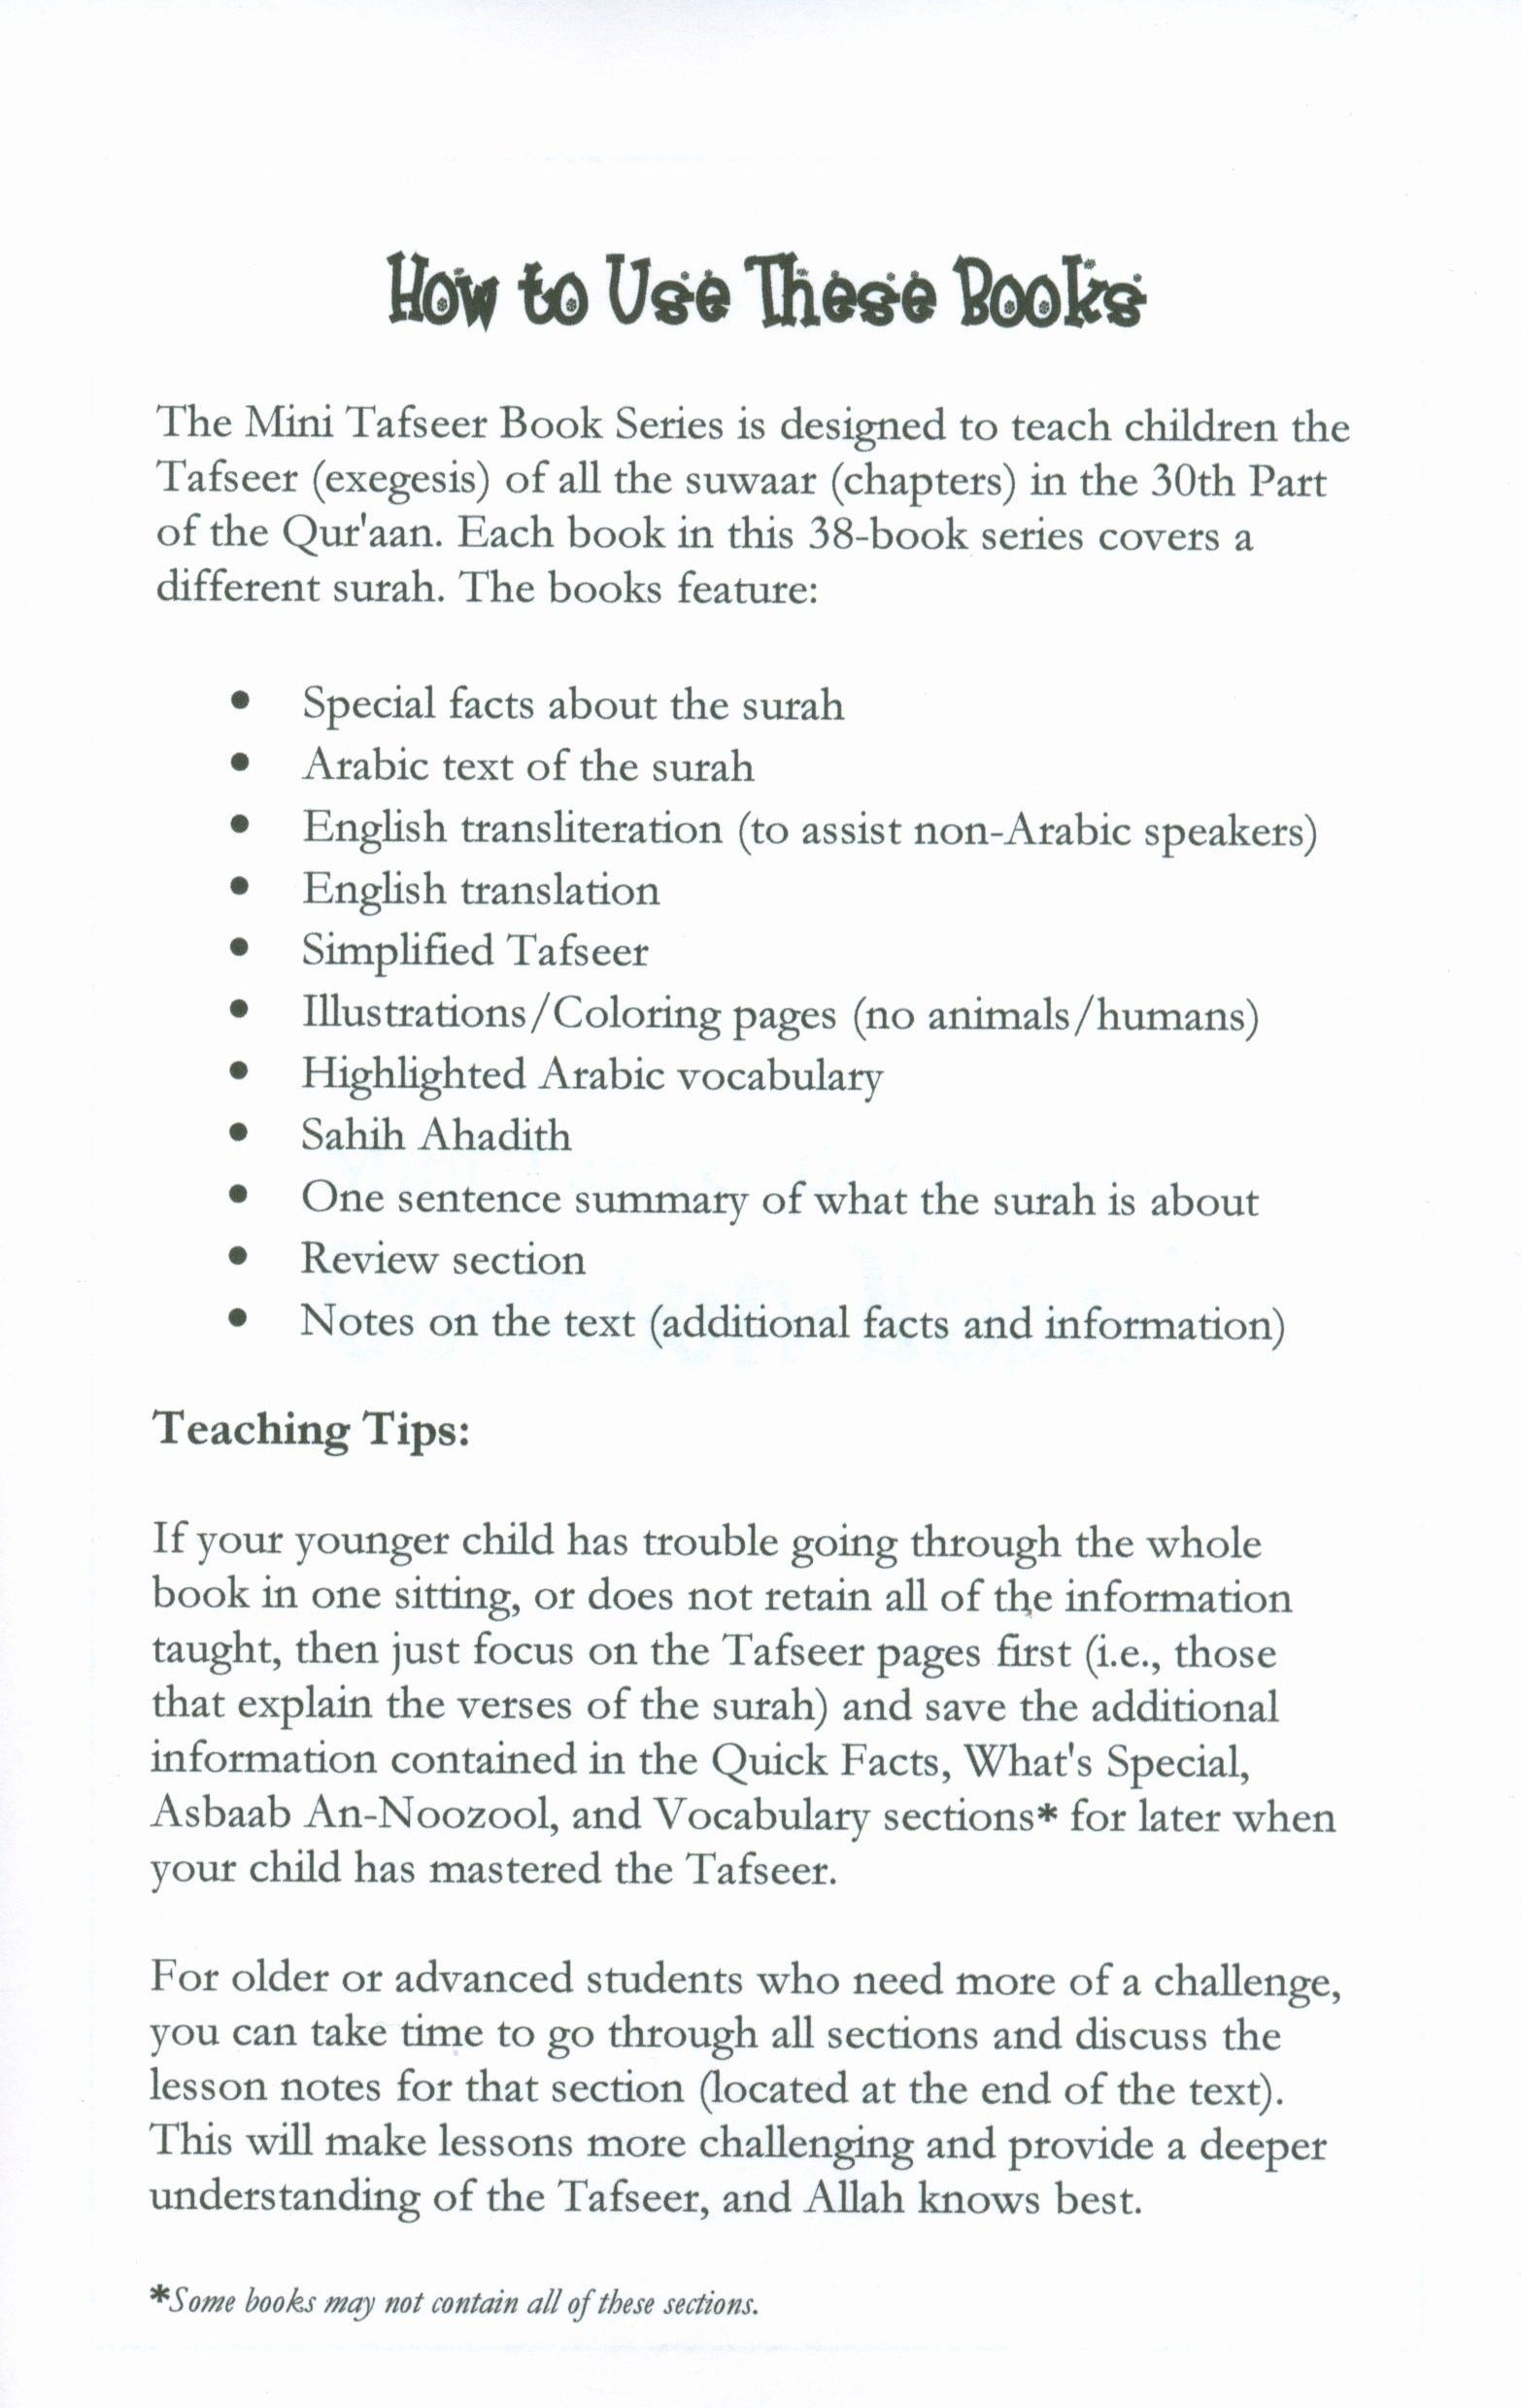 Mini Tafseer Book Suratun Naba' (Surah 78)